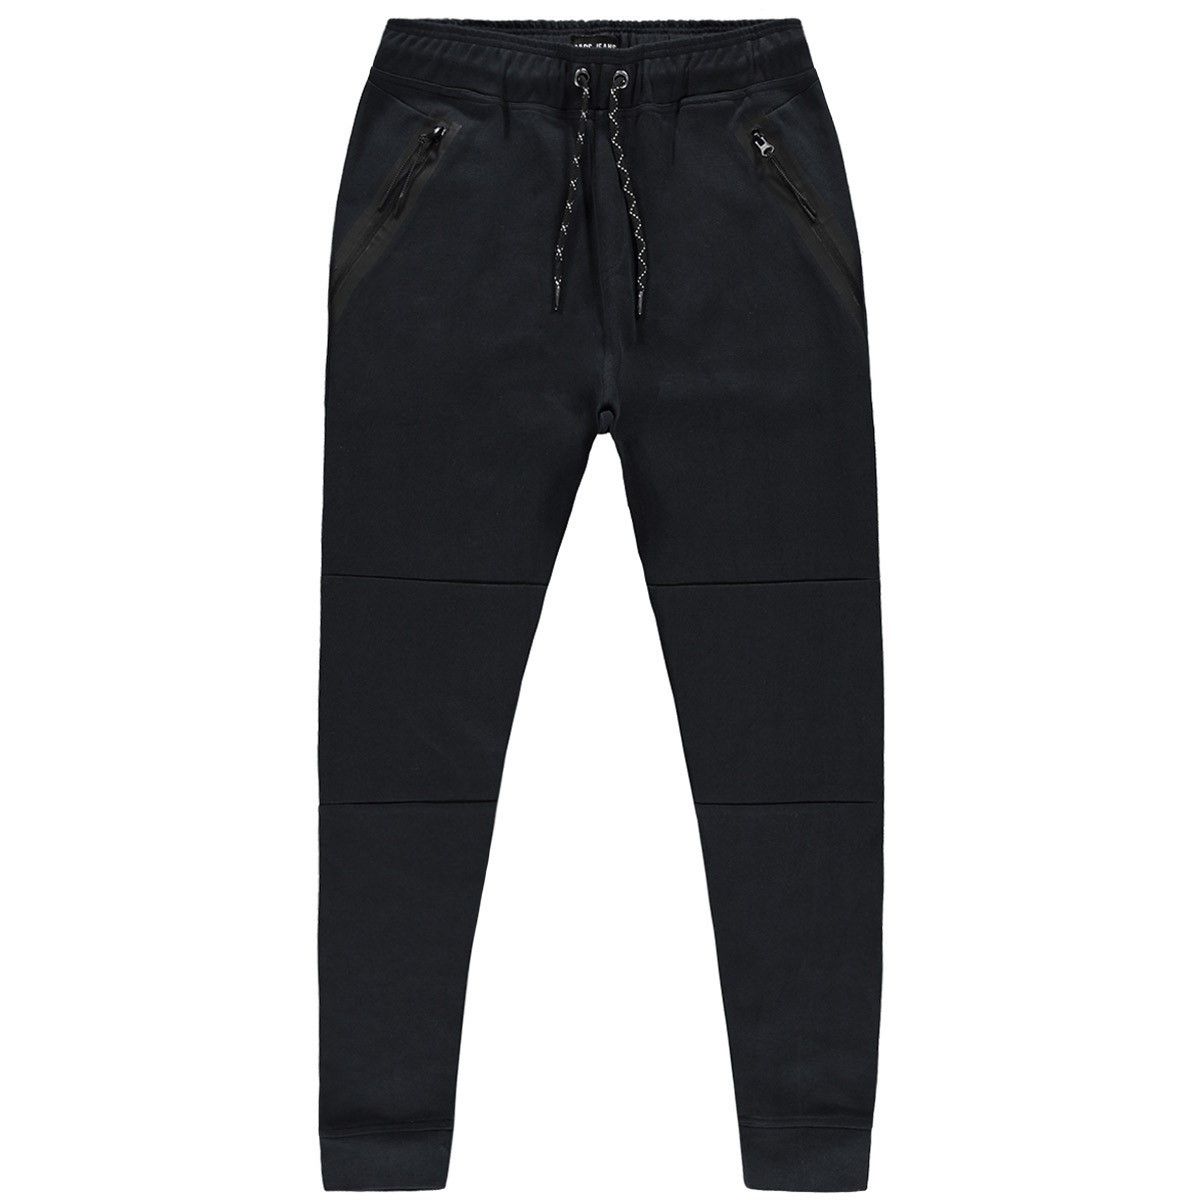 Cars jeans Pants Lax Jr. 01 black 00103628-EKA26008400000001